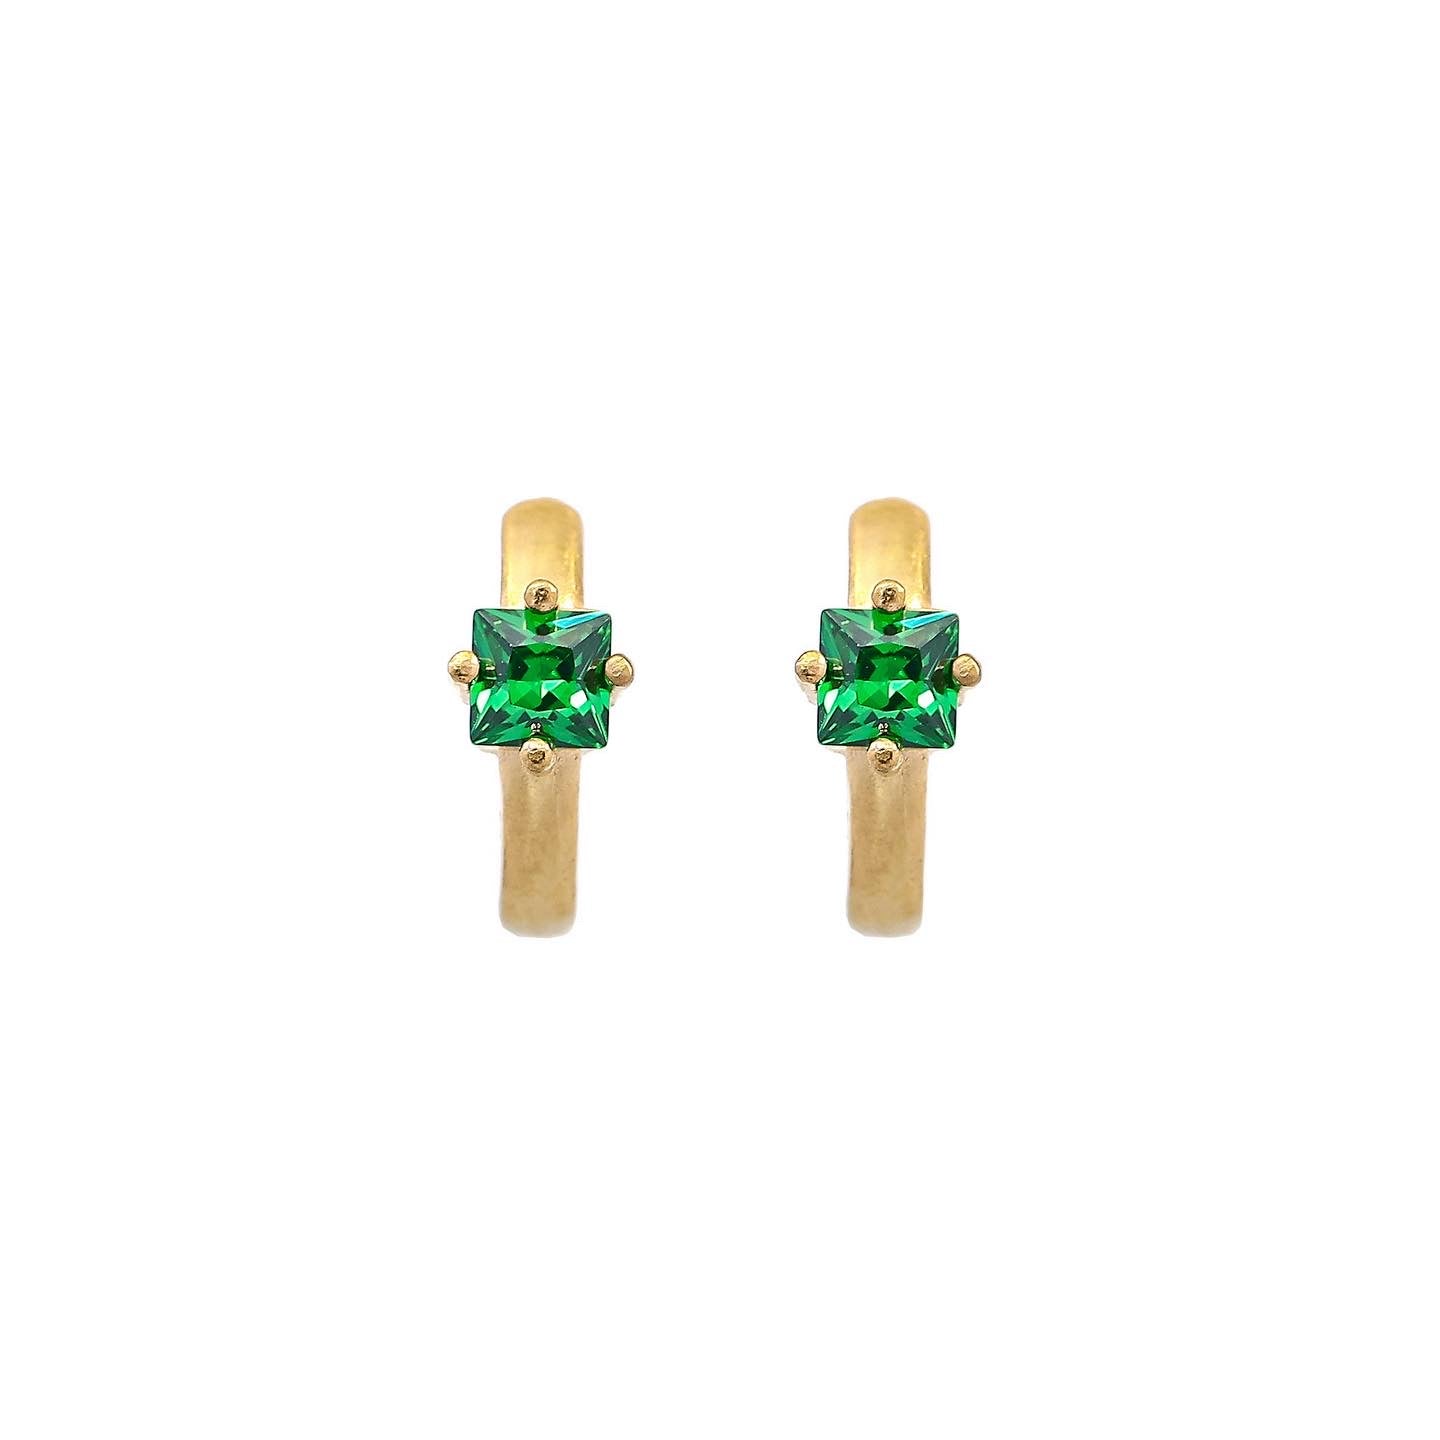 Emma Stud earrings - Emerald green